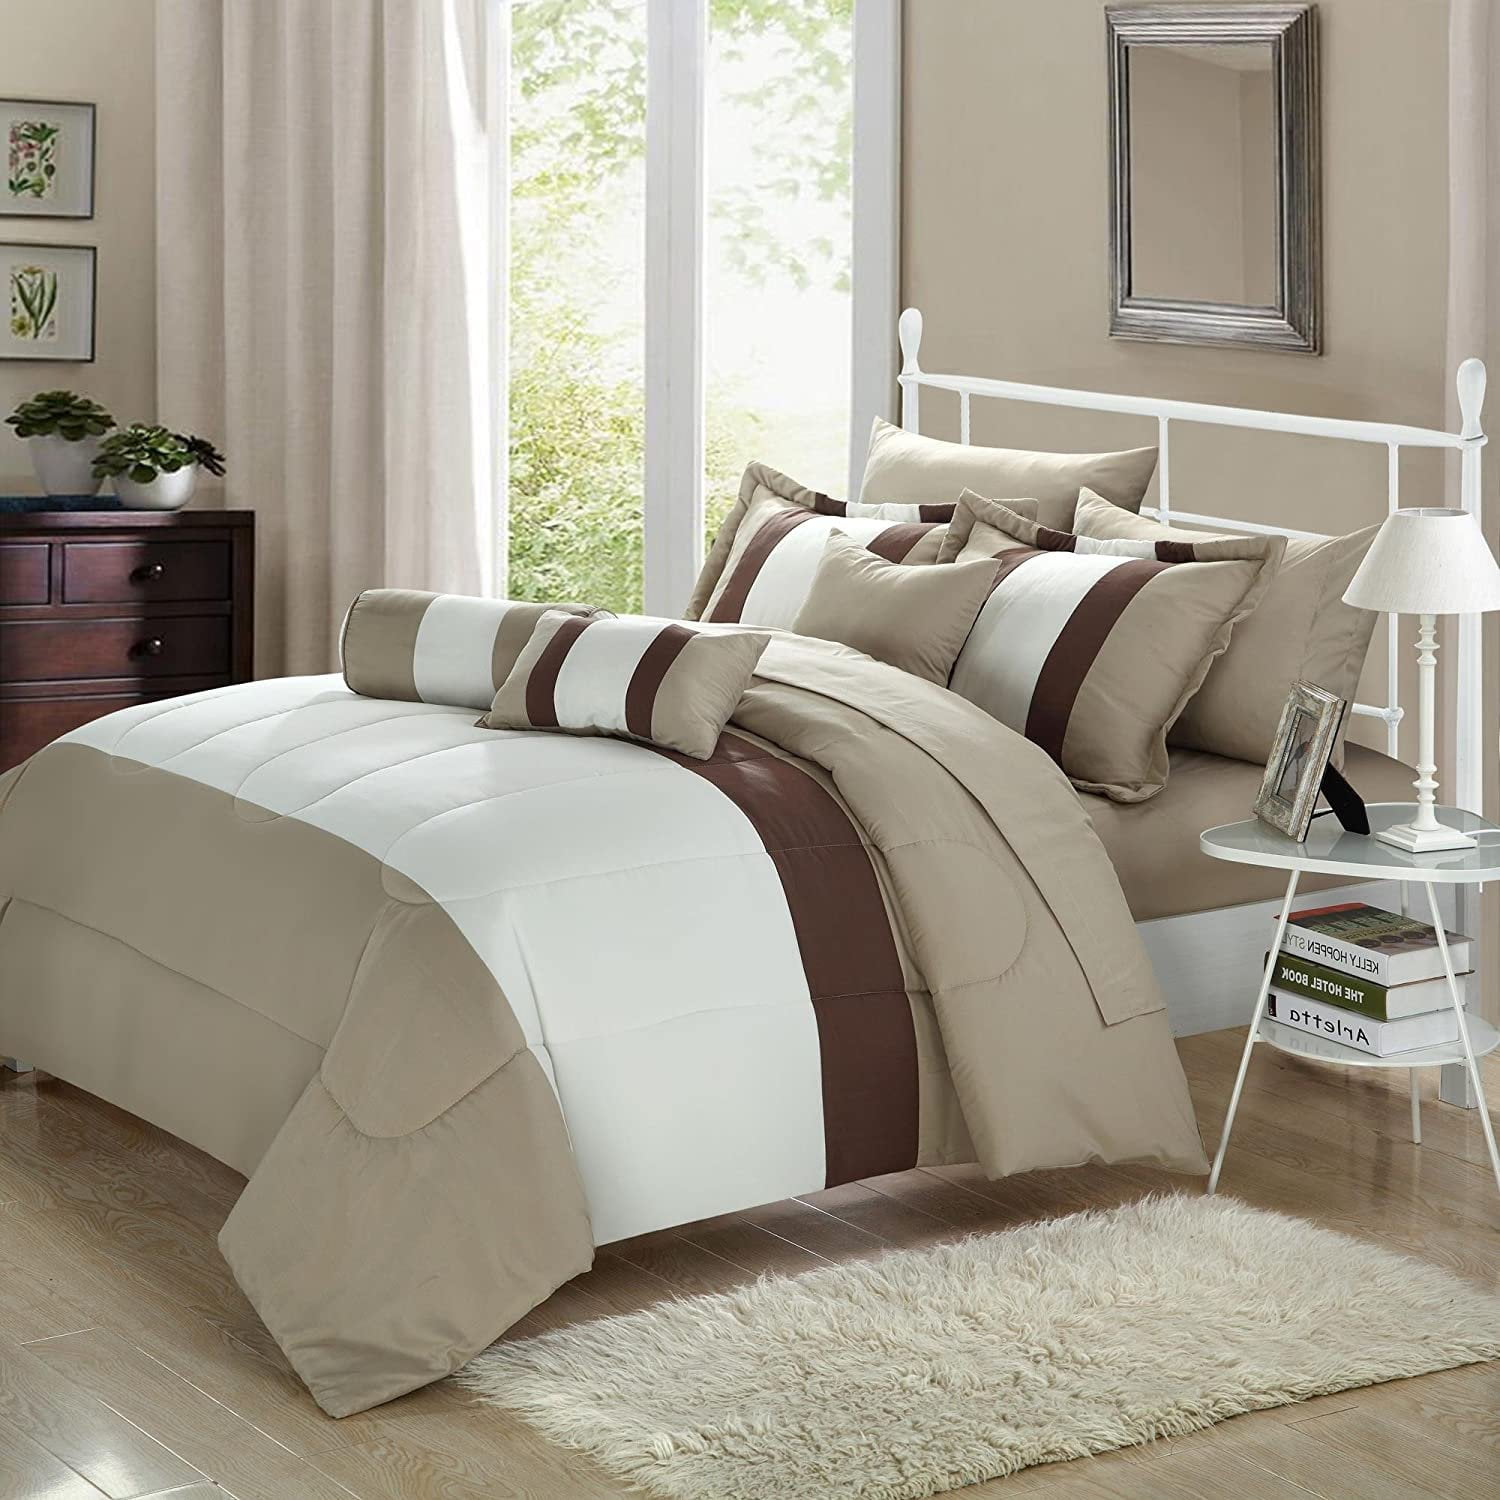 Serenity Beige Tan King Piece Comforter Bed In A Bag Set Walmart Com